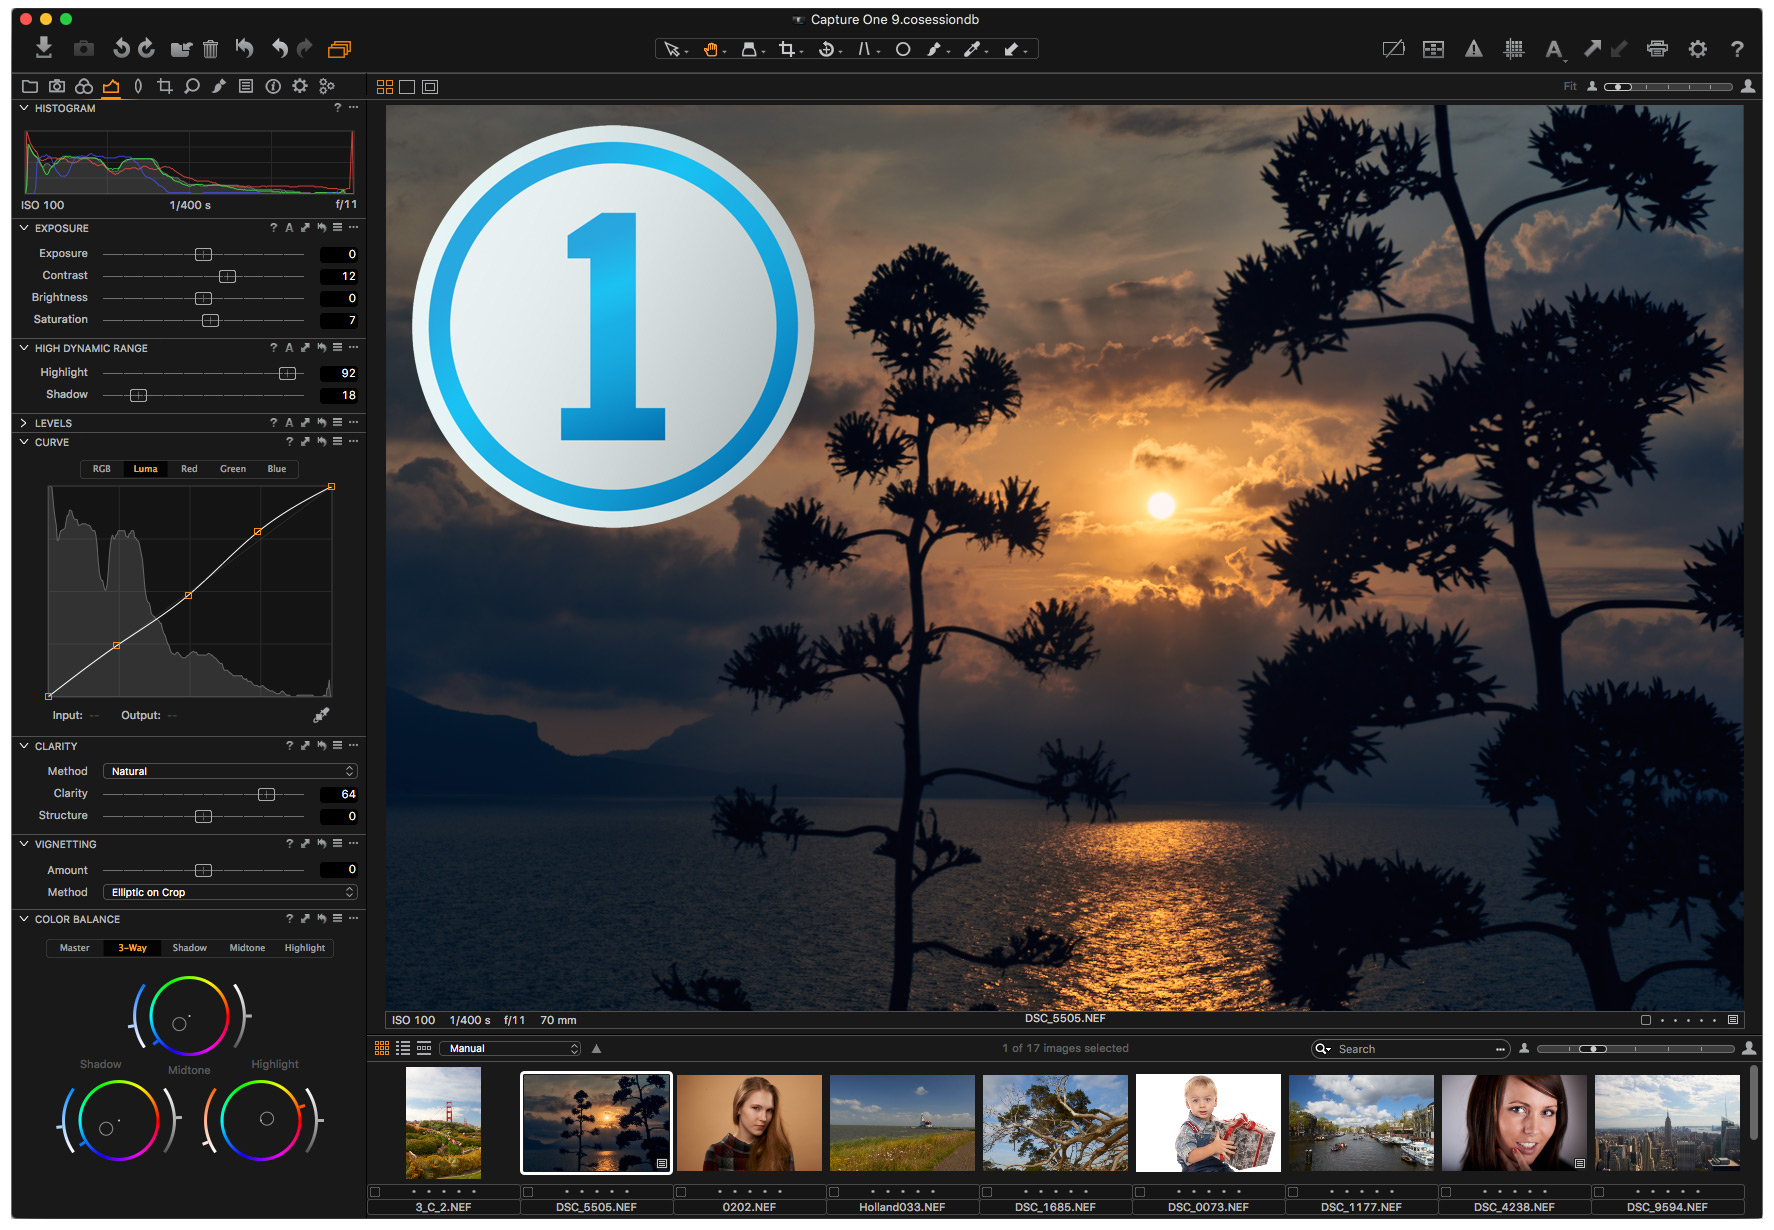 Capture One Pro Crack Mac 20 v13.1.0.162 + Key Download